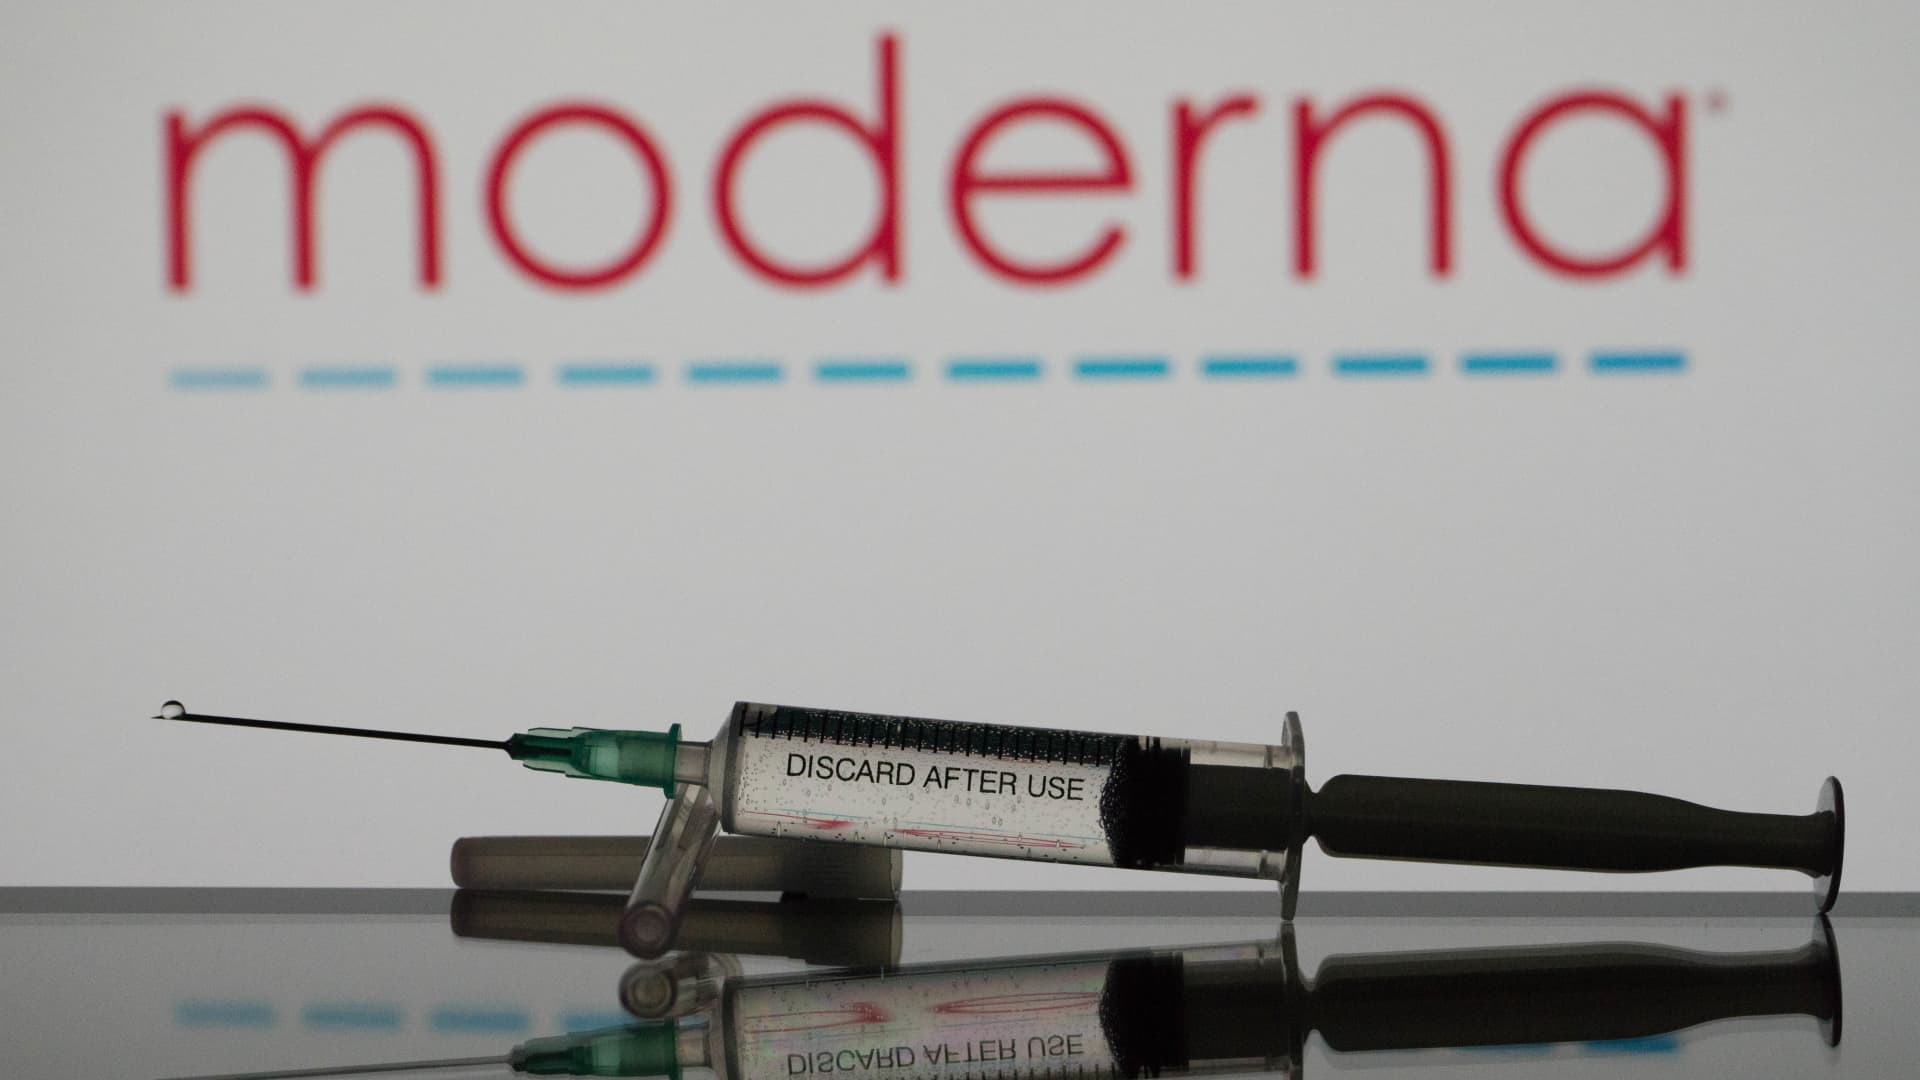 Moderna posts surprise quarterly profit even as Covid vaccines sales plummet